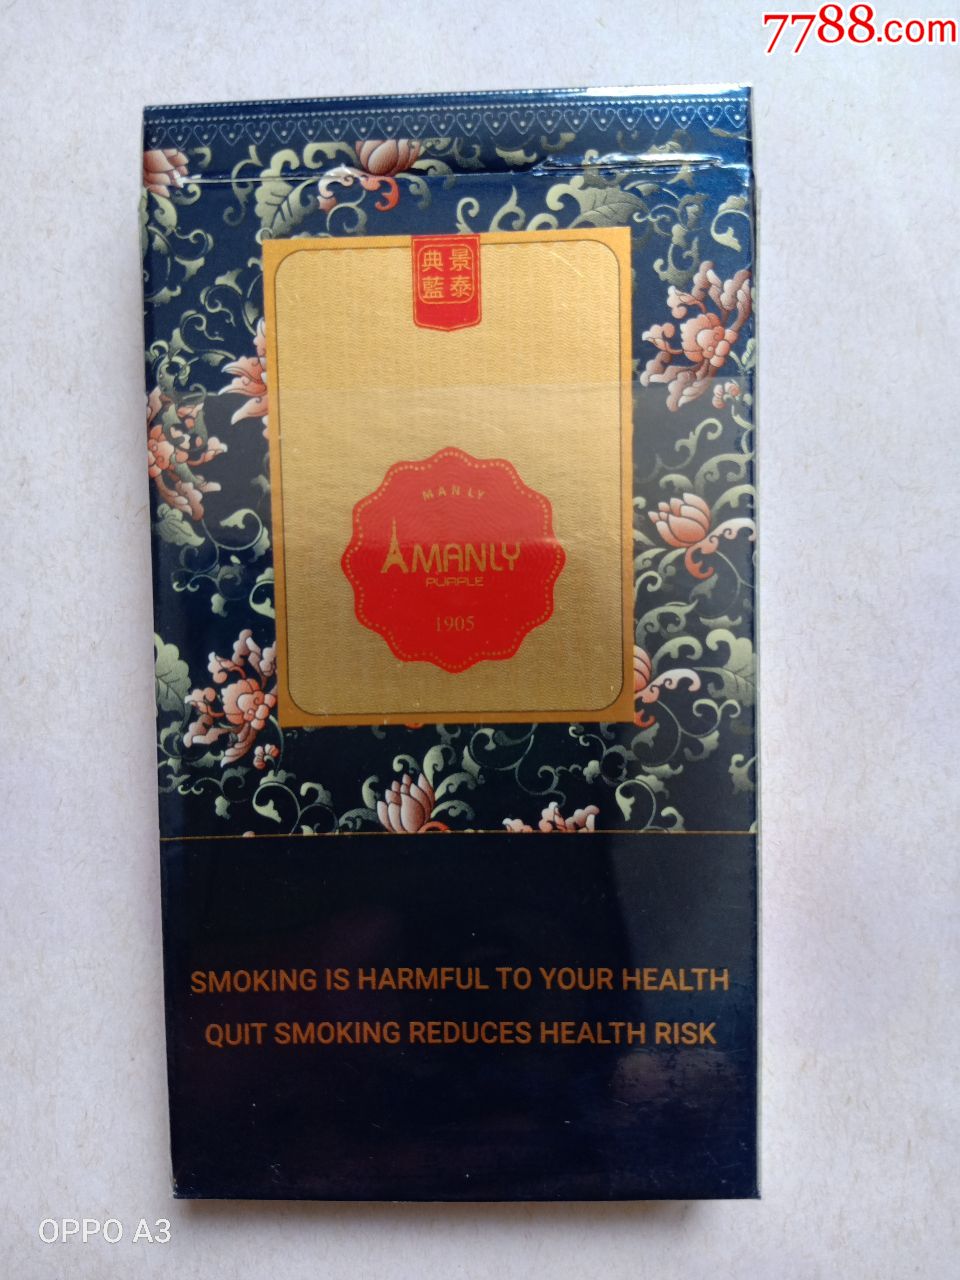 空烟盒:男人气概manly景泰典蓝1905,焦5,支架锡纸外塑全